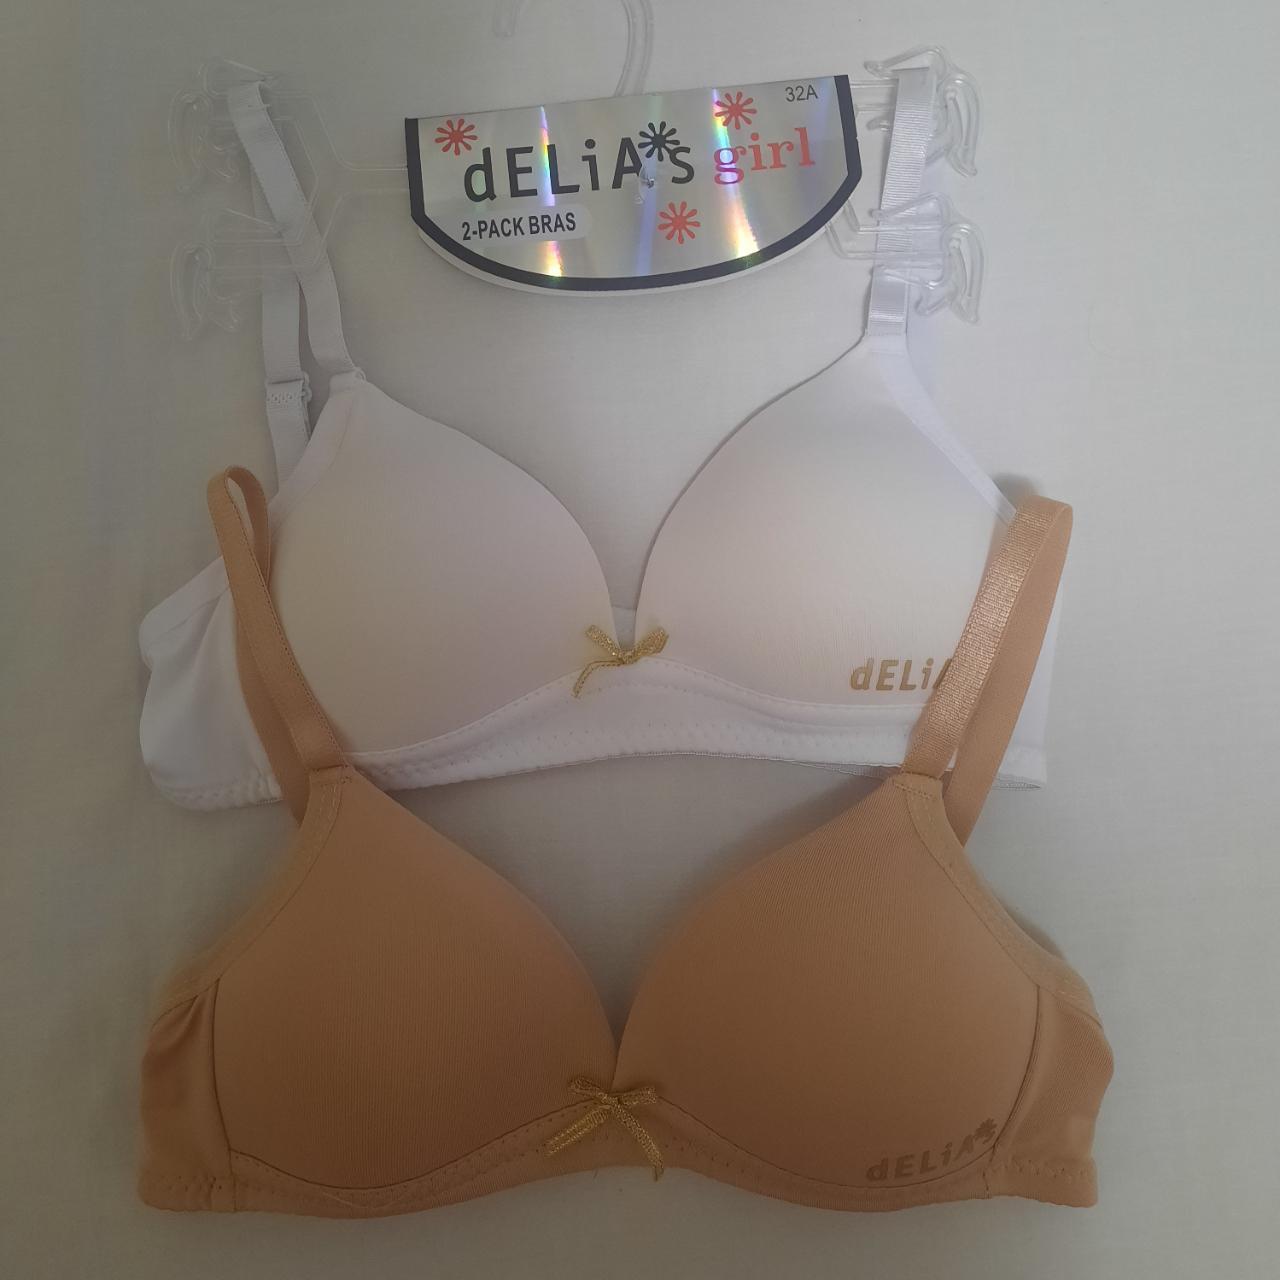 DELIA*S 2 Pack Bras Size 32A #bras #girls - Depop